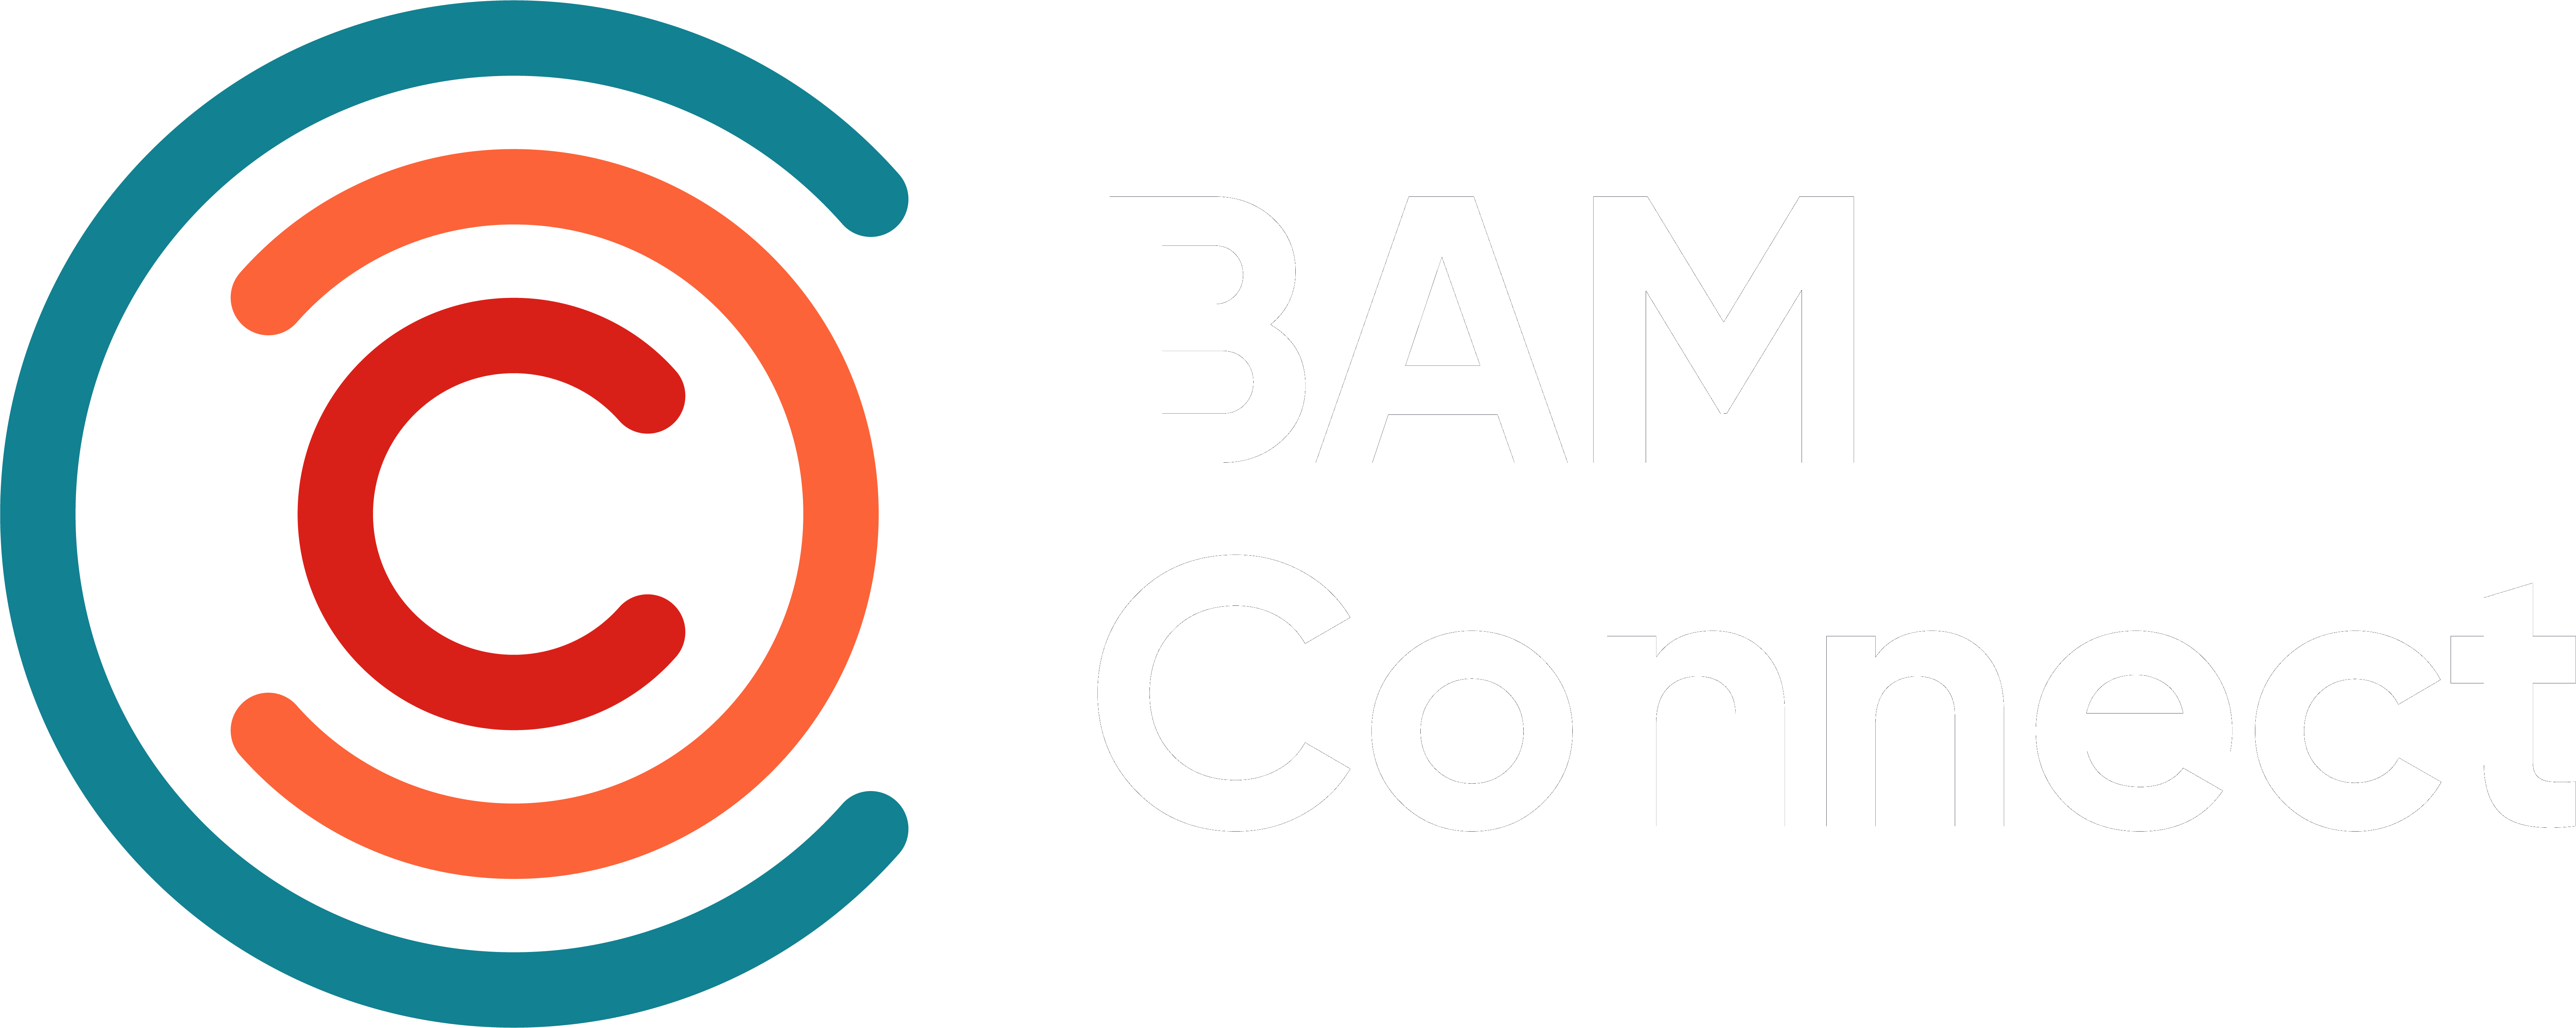 BAM Connect